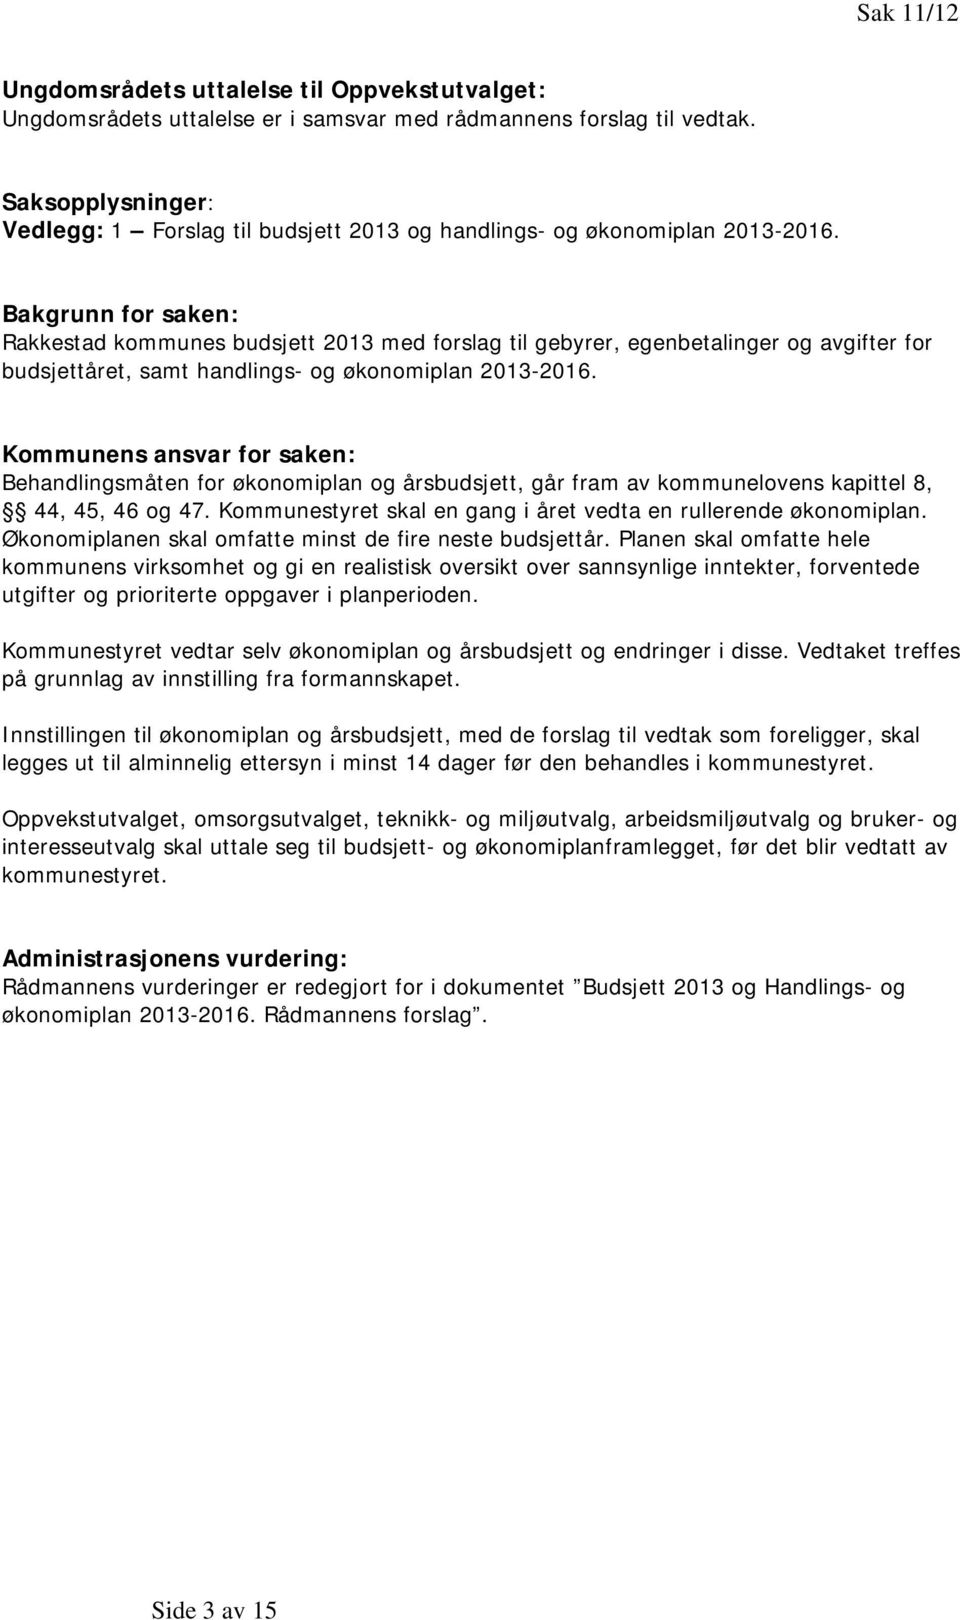 Bakgrunn for saken: Rakkestad kommunes budsjett 2013 med forslag til gebyrer, egenbetalinger og avgifter for budsjettåret, samt handlings- og økonomiplan 2013-2016.